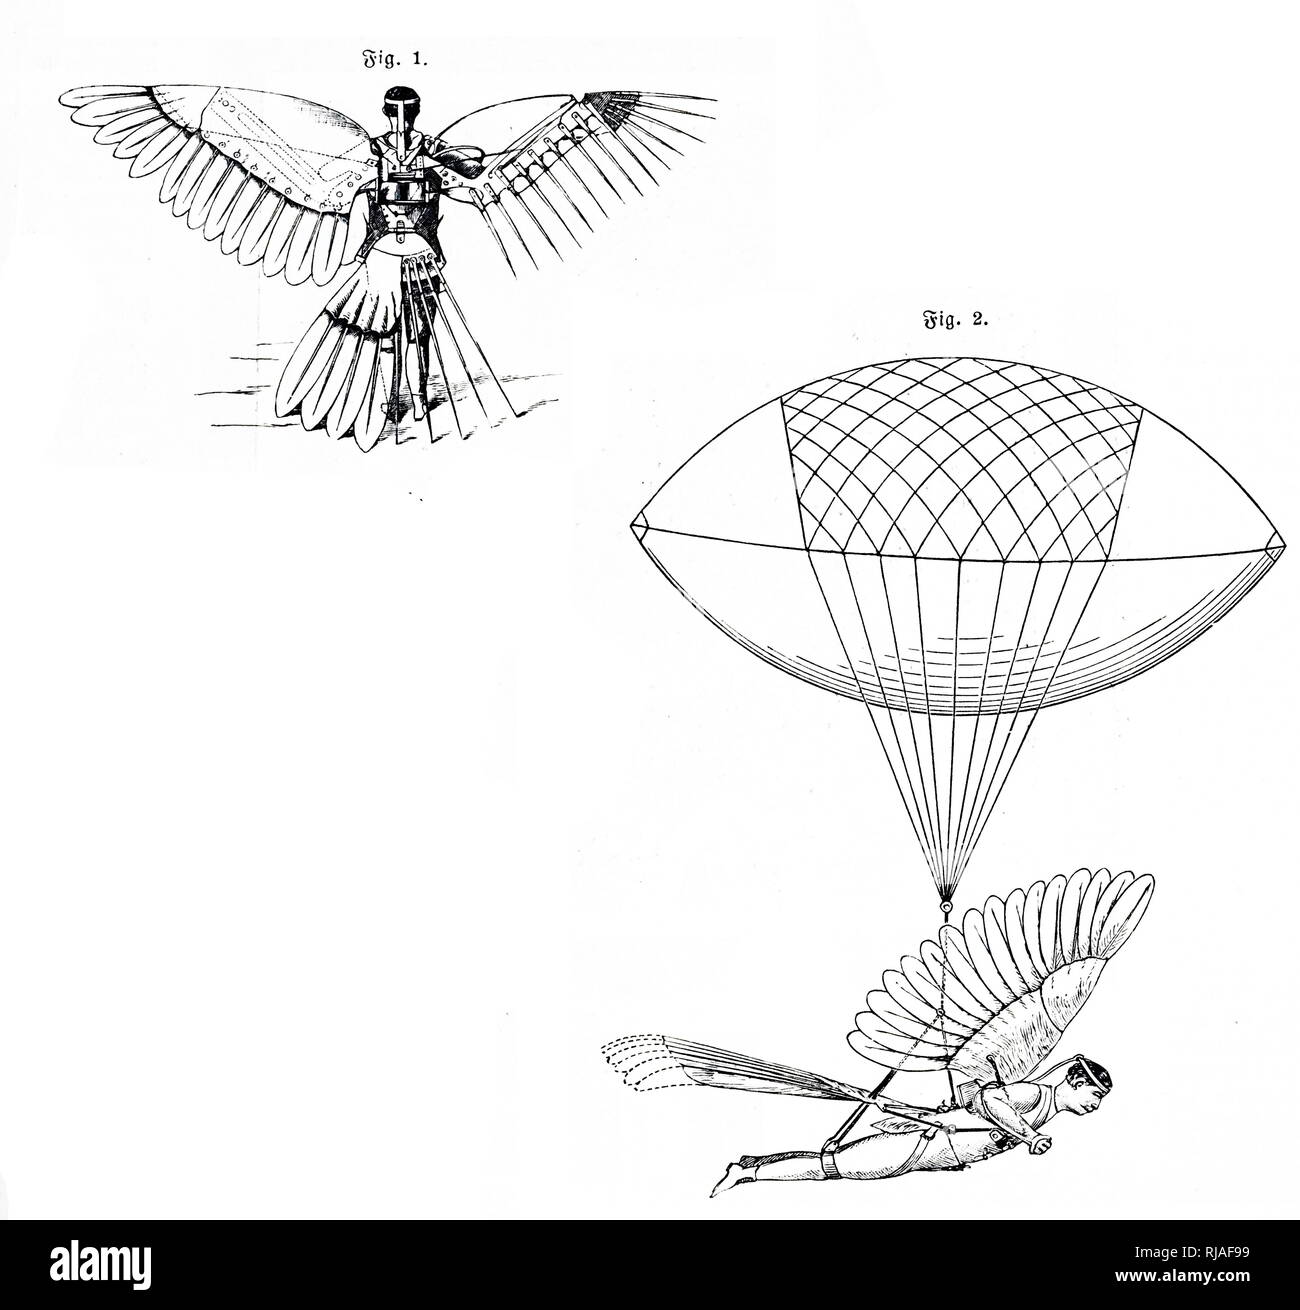 Una incisione raffigurante Ruben Jasper Spalding il metodo rapido di trasporto diretto - un condotto elettricamente ornithopter. Datata del XIX secolo Foto Stock